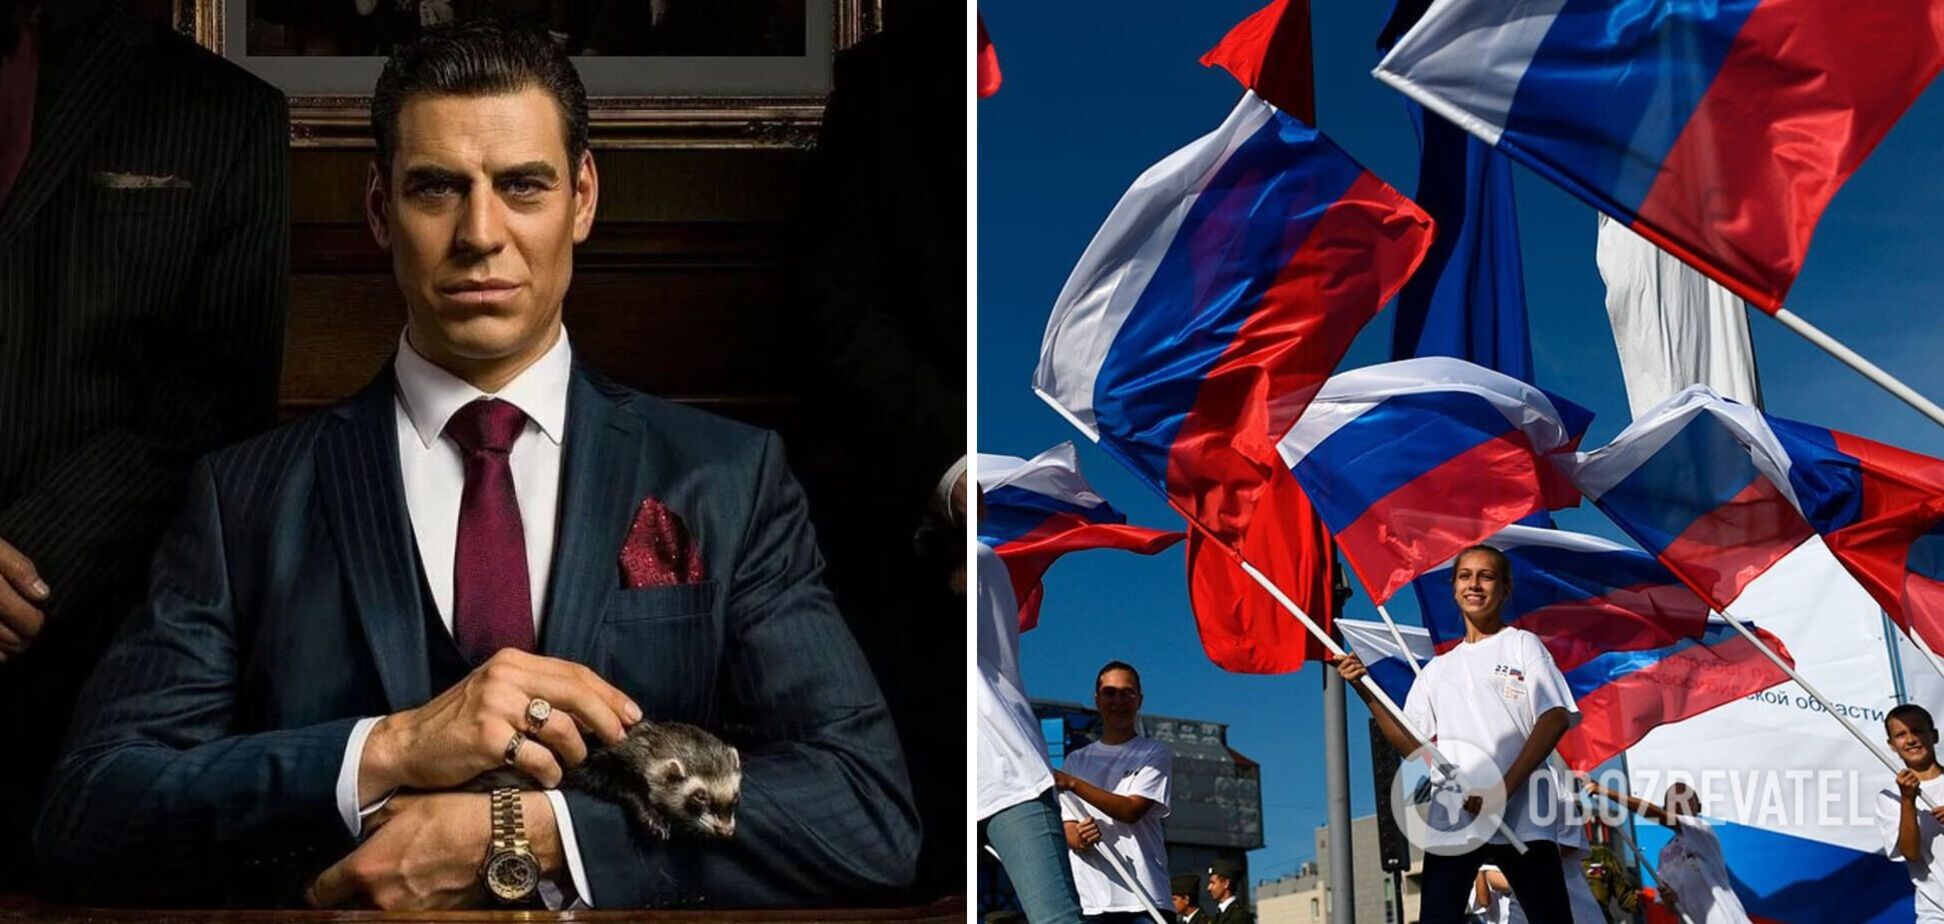 Відео з російським актором Дюжевим, який прогнувся і закликав 'славити РФ стоячи', стало вірусним